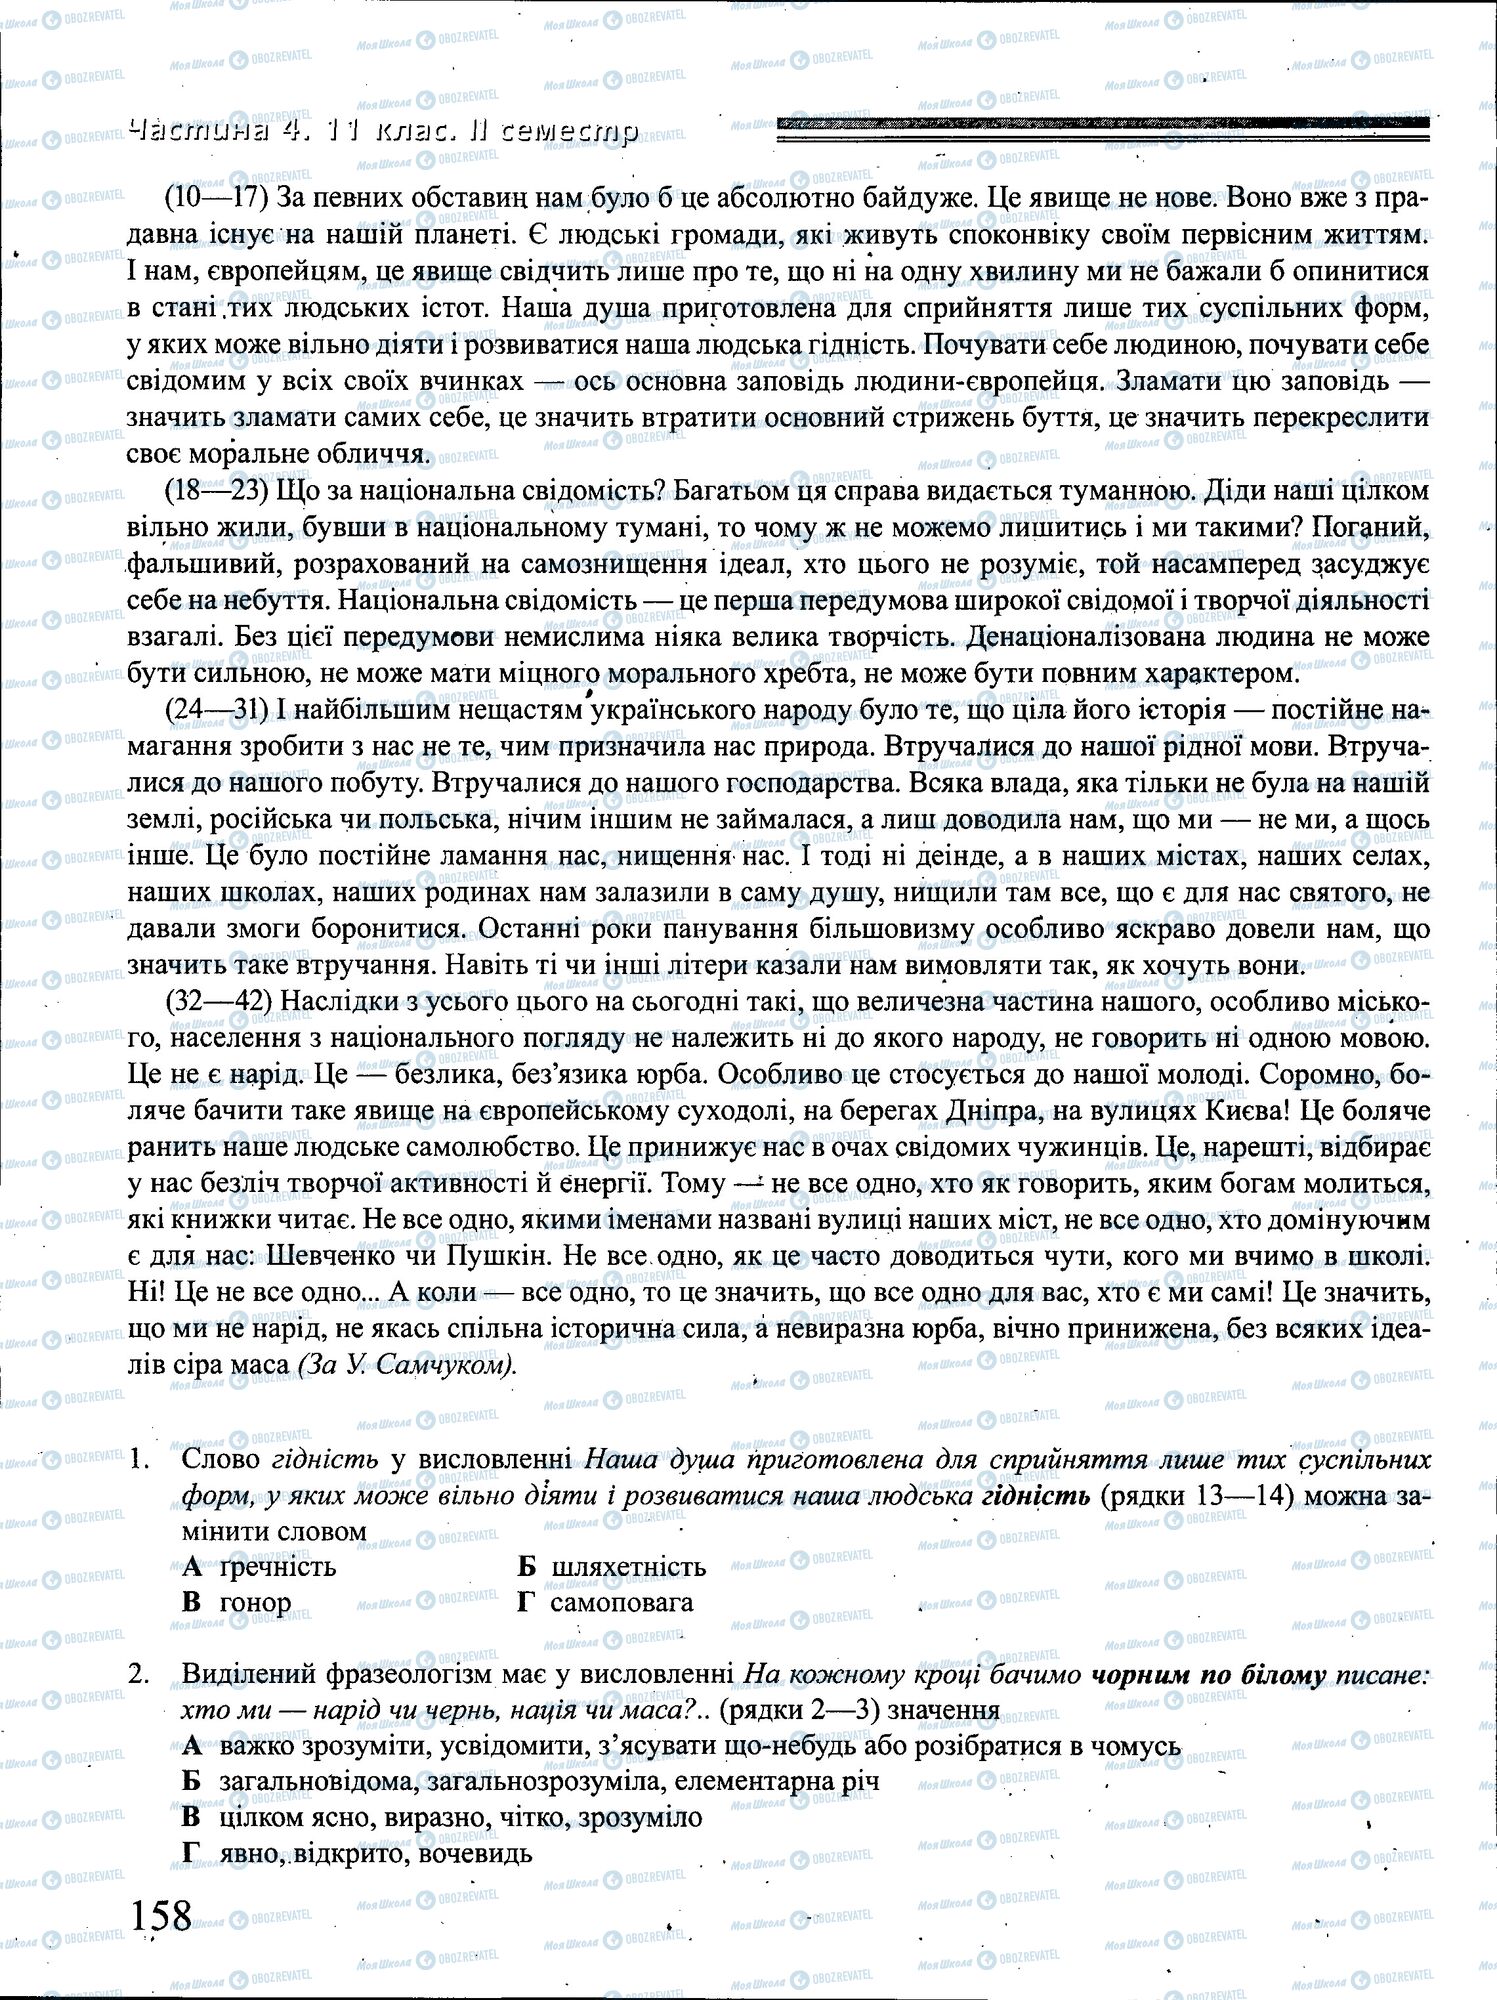 ДПА Укр мова 4 класс страница 158